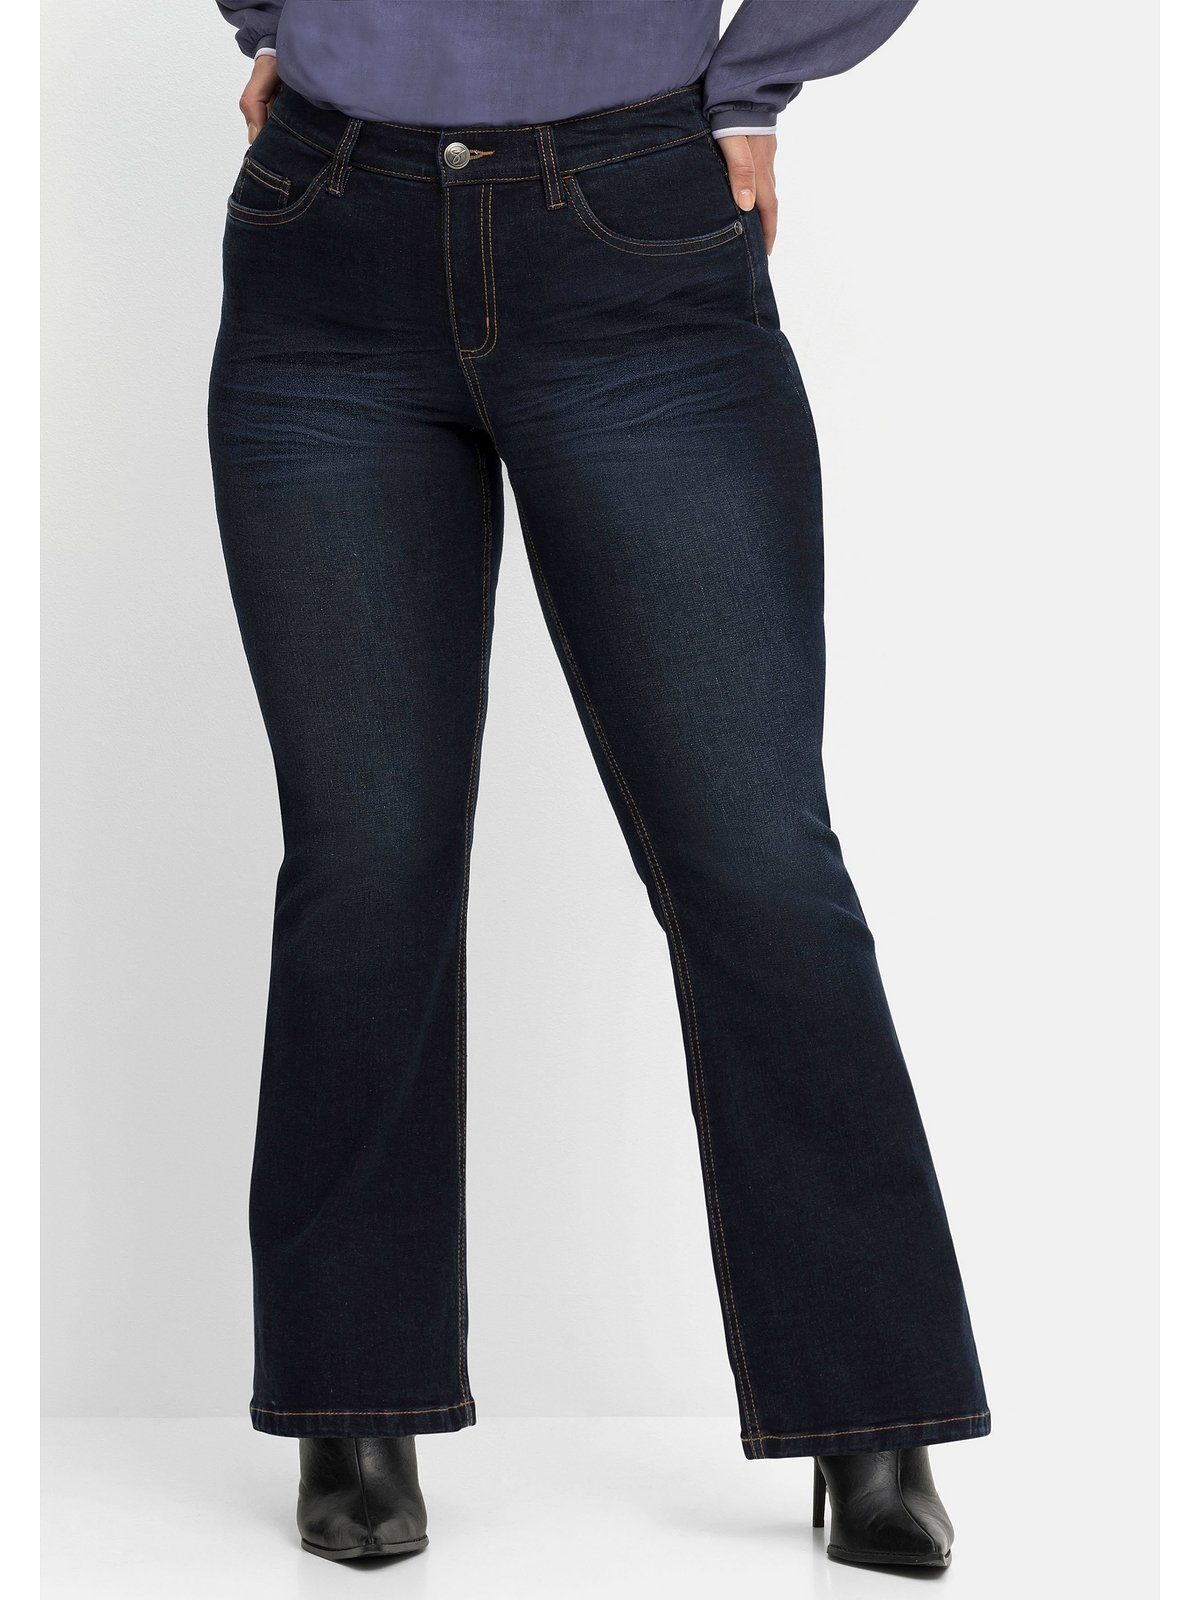 Bootcut-Jeans Denim dark mit extralang Used-Effekten, Große Sheego Größen blue